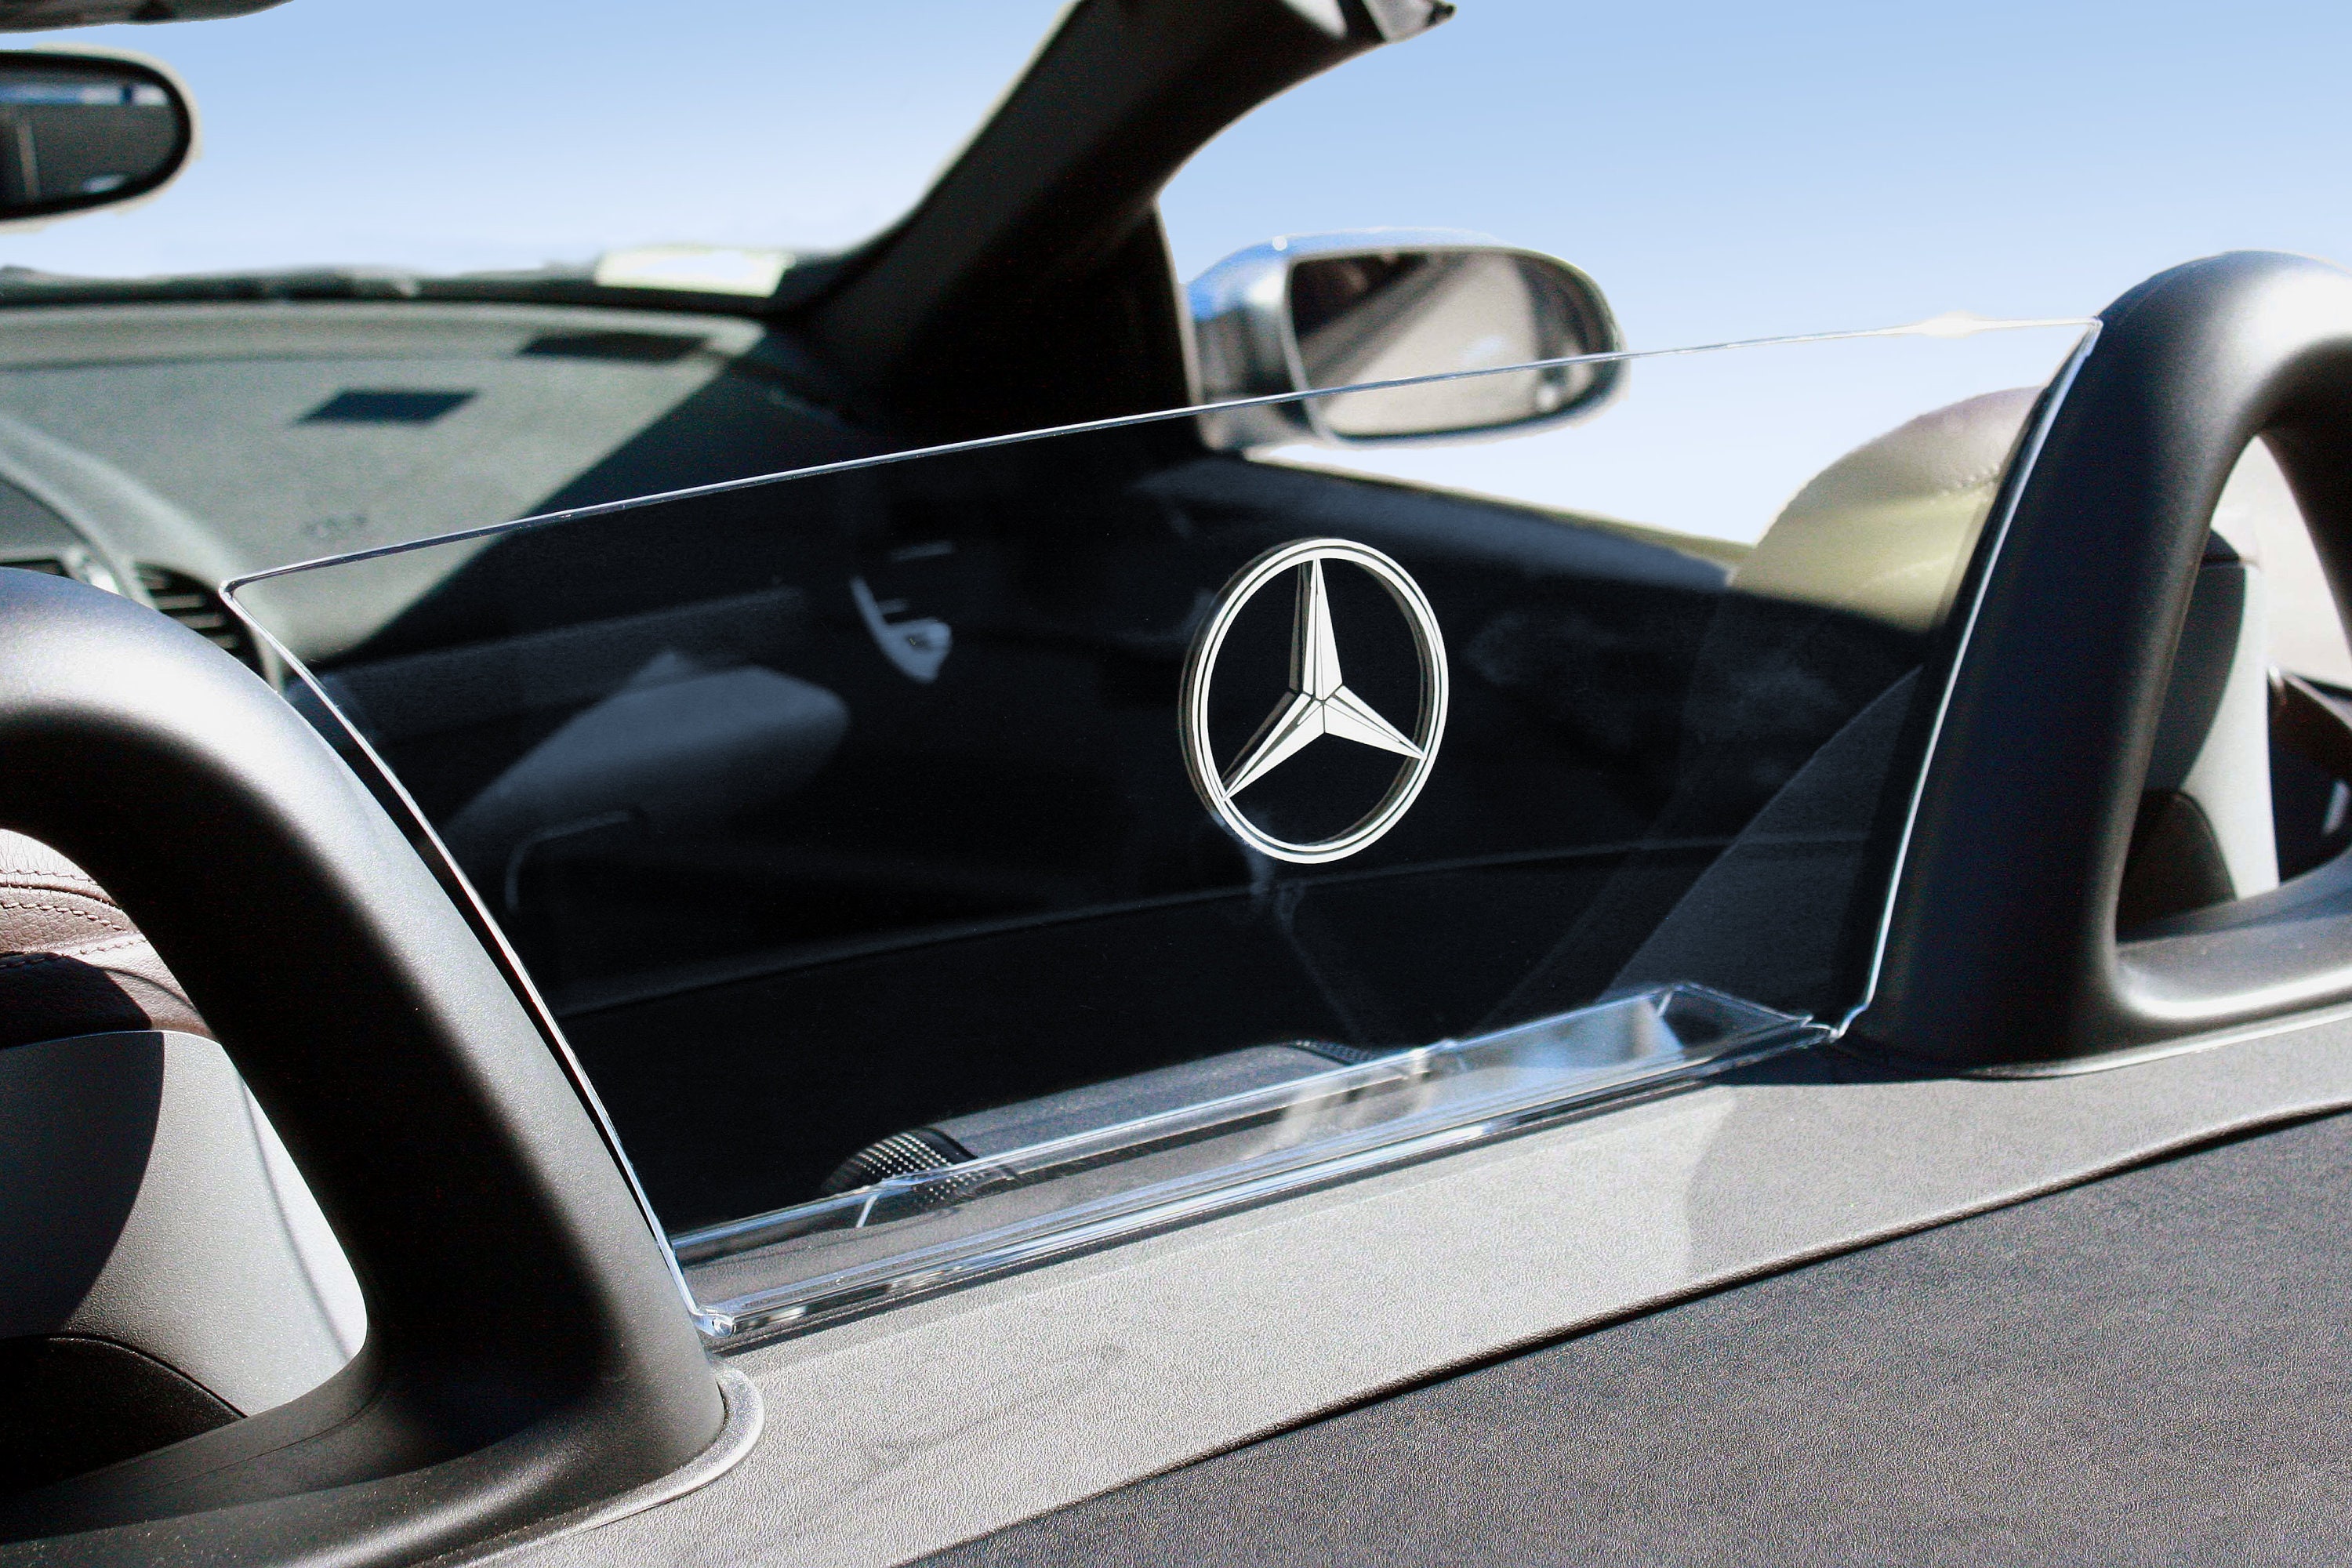 Housse de protection intérieure pour Mercedes Benz SLK, AMG, R 171, R,  109,00 €